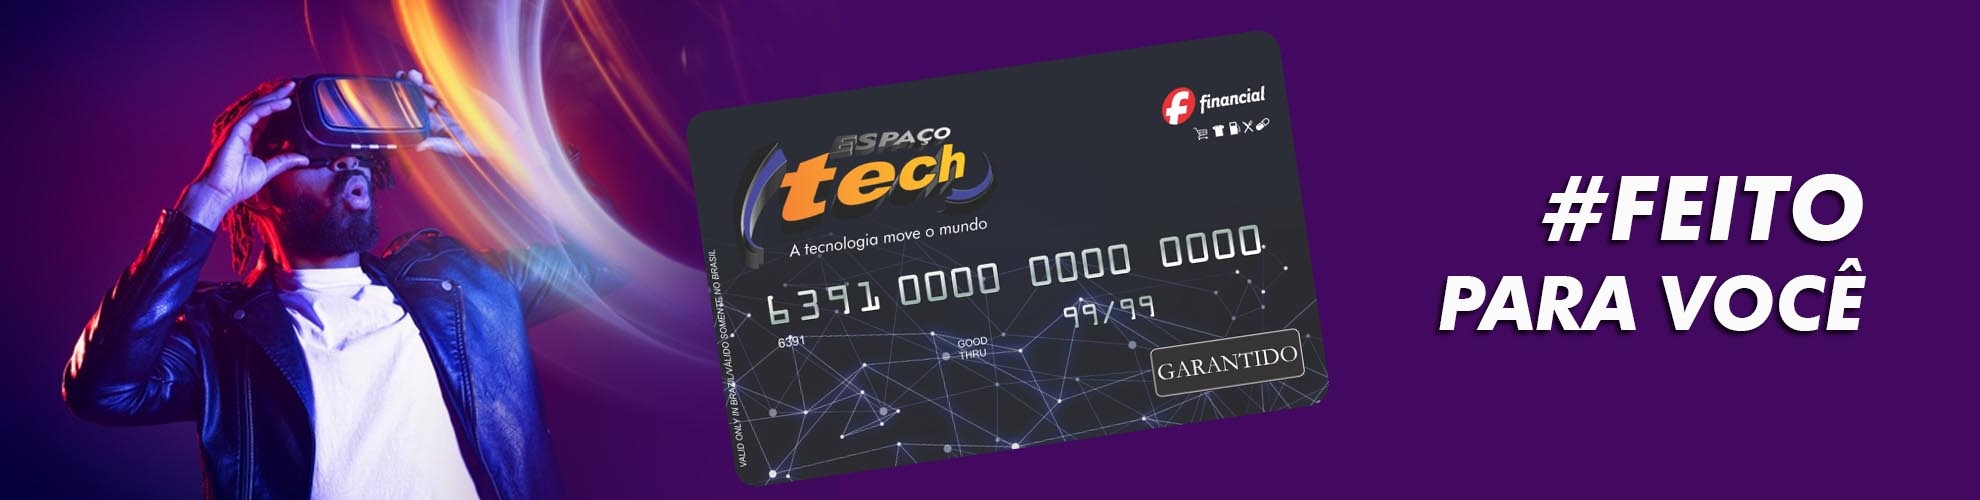 Cartão Espaço Tech - Crédito